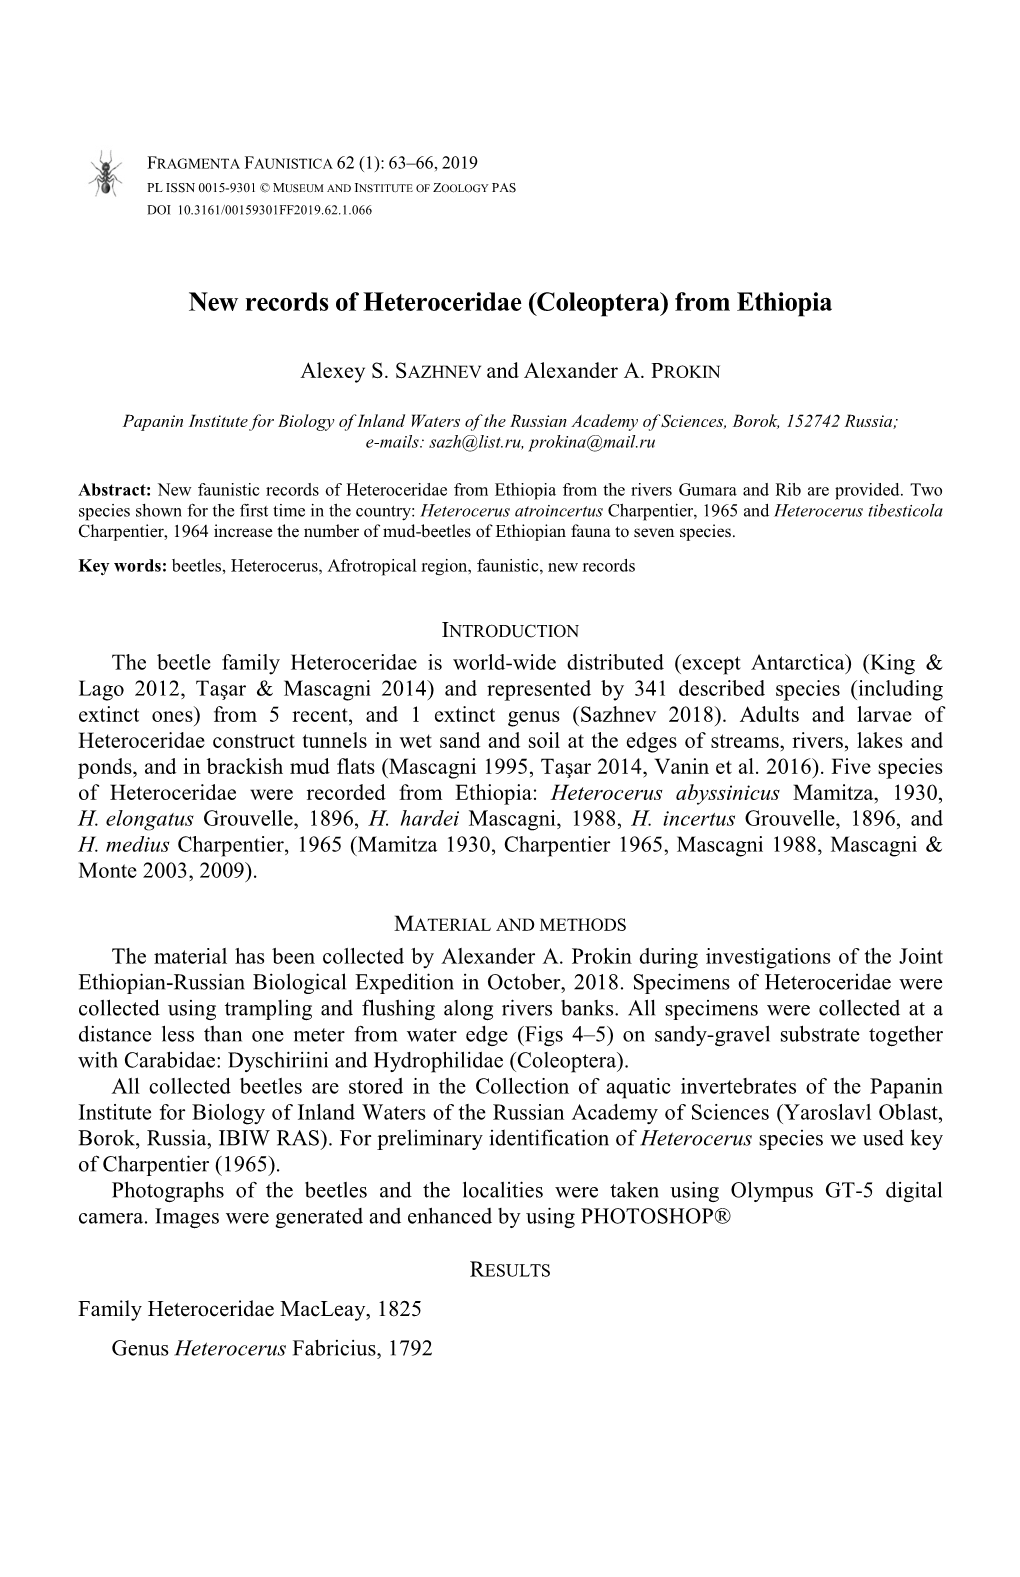 New Records of Heteroceridae (Coleoptera) from Ethiopia